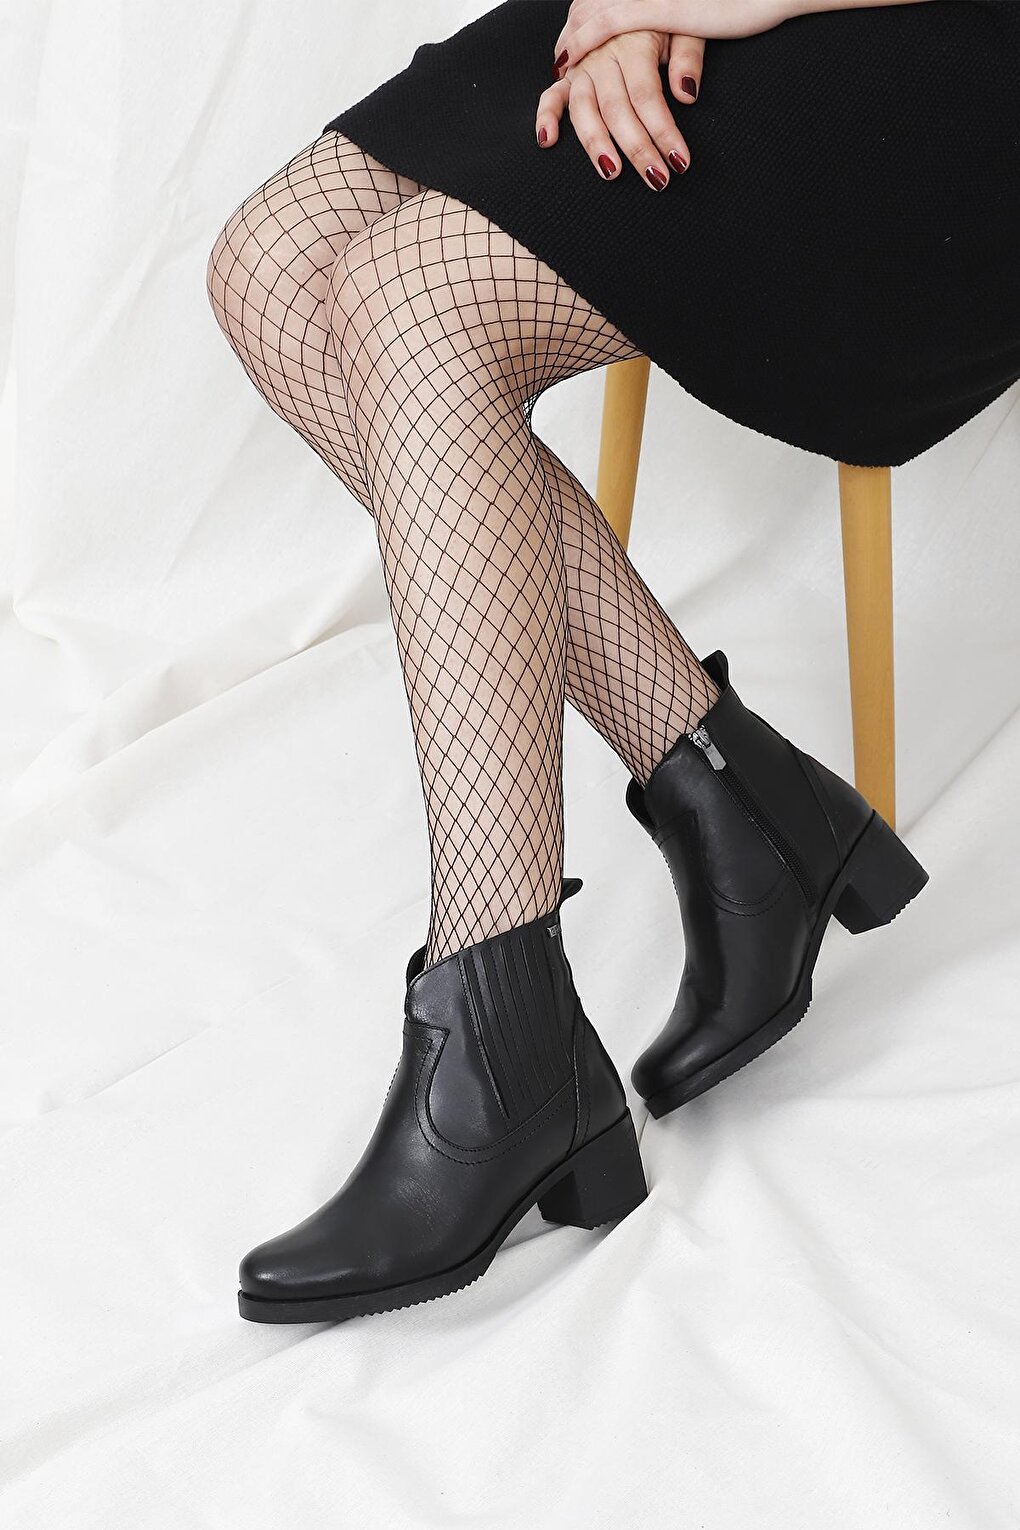 Женские повседневные ботинки на молнии из натуральной кожи с круглым носком на резиновой подошве 10404 GÖNDERİ(R), черный